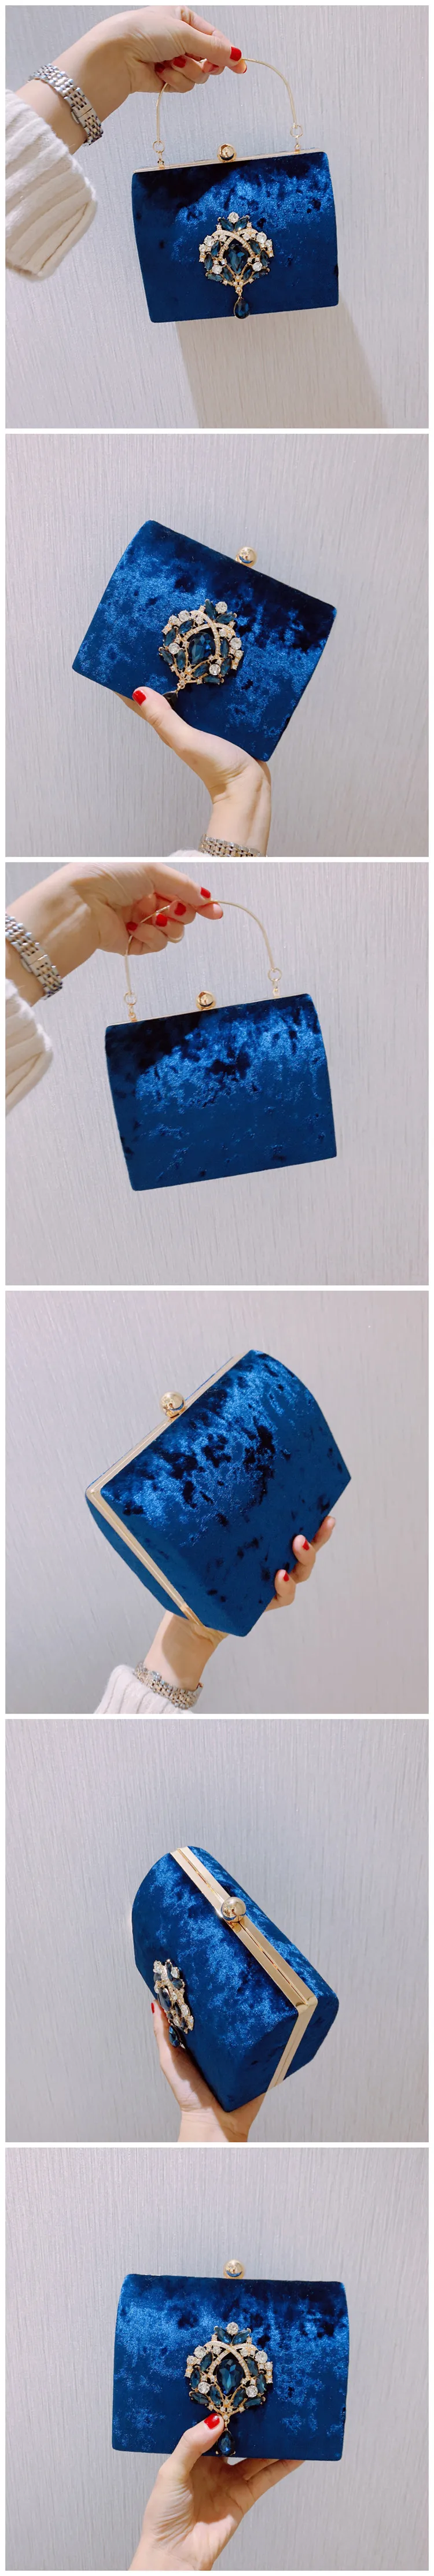 Meloke роскошный дизайн в штучной упаковке вечерняя сумка бархатная Ретро квадратная сумочка женская сумка-клатч со стразами Золотая сумочка для свадебной вечеринки MN2019